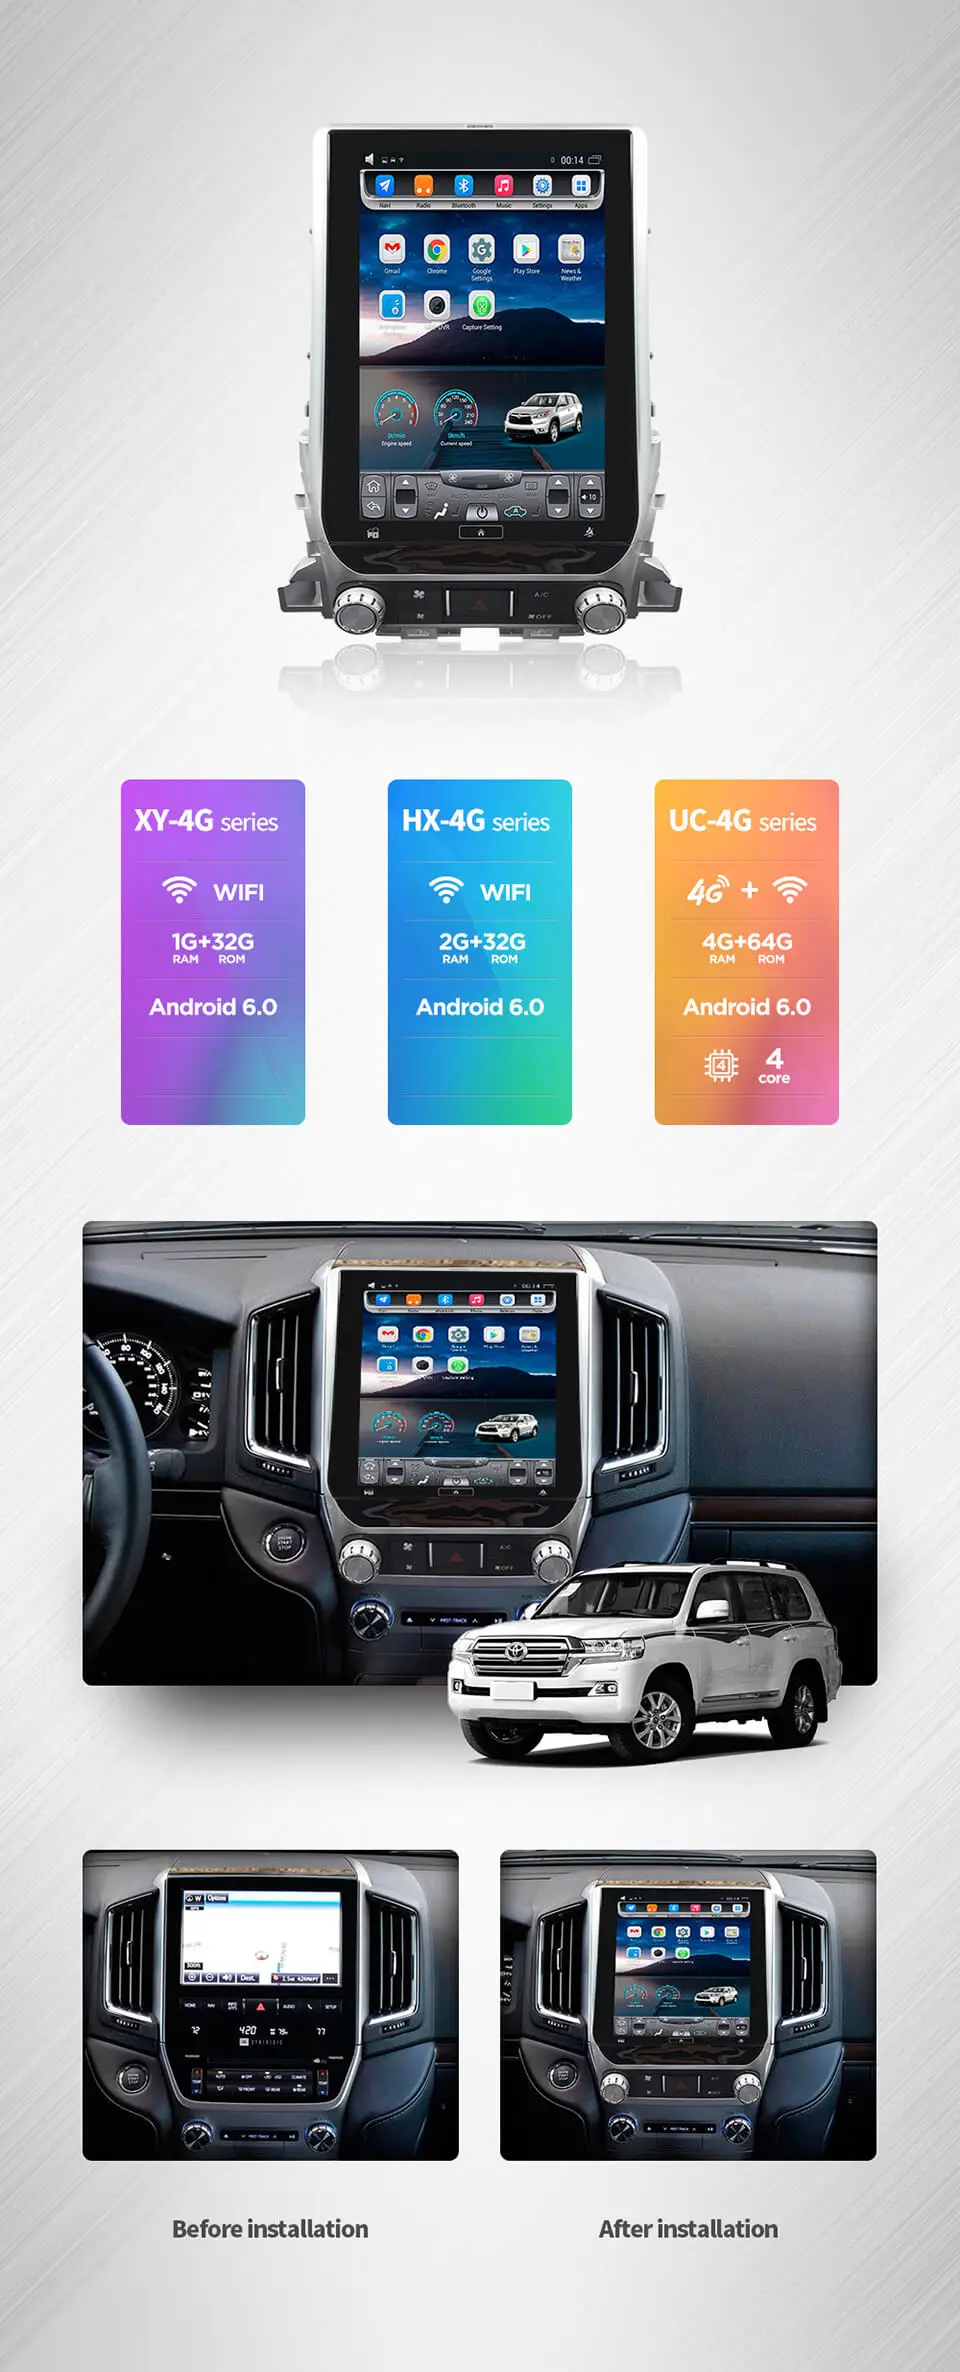 4G LTE 64G rom вертикальный экран android автомобильный gps мультимедийный Видео Радио плеер для новых Toyota Land cruiser 17 car navigaton